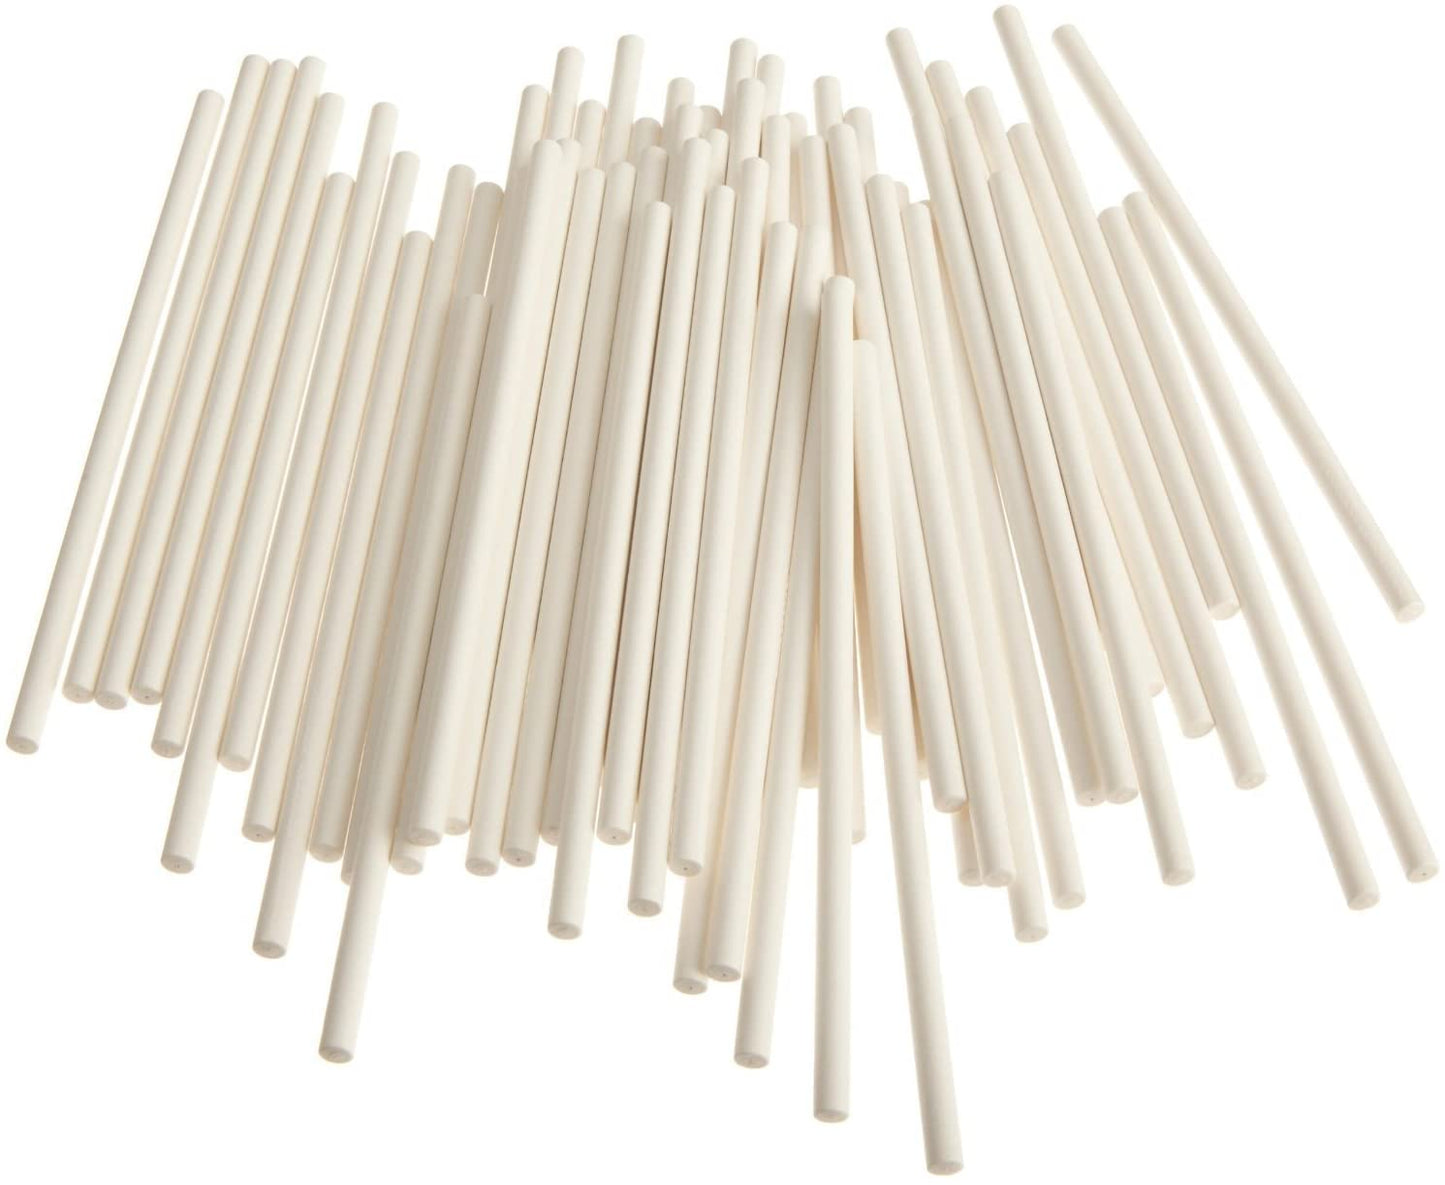 Lollipop Sticks, 11.75", 100 Pack